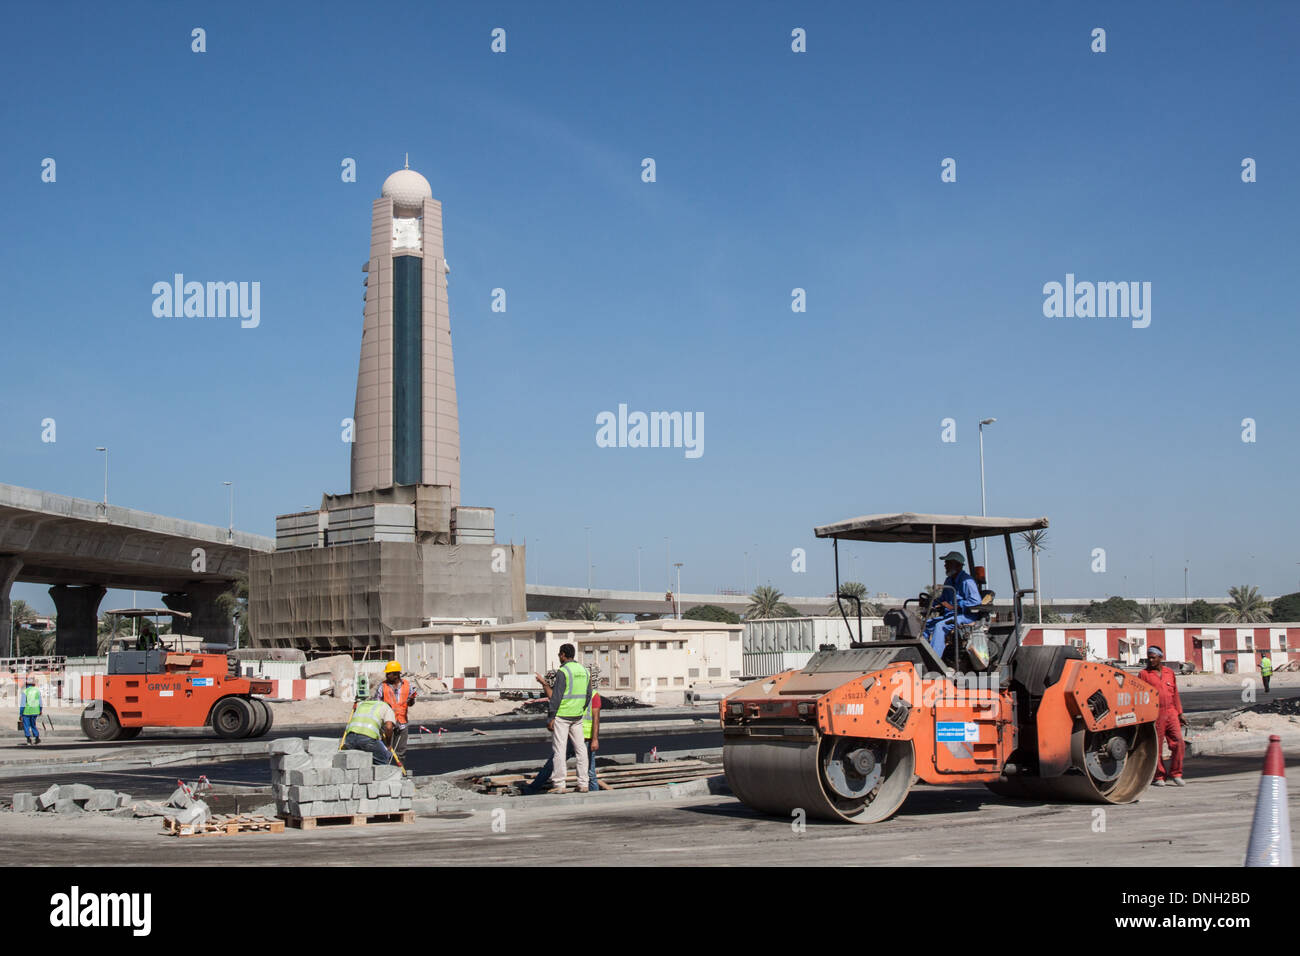 Opere Pubbliche di veicoli e i lavoratori immigrati a un'autostrada sito in costruzione, centro finanziario, DUBAI, Emirati arabi uniti, MEDIO ORIENTE Foto Stock